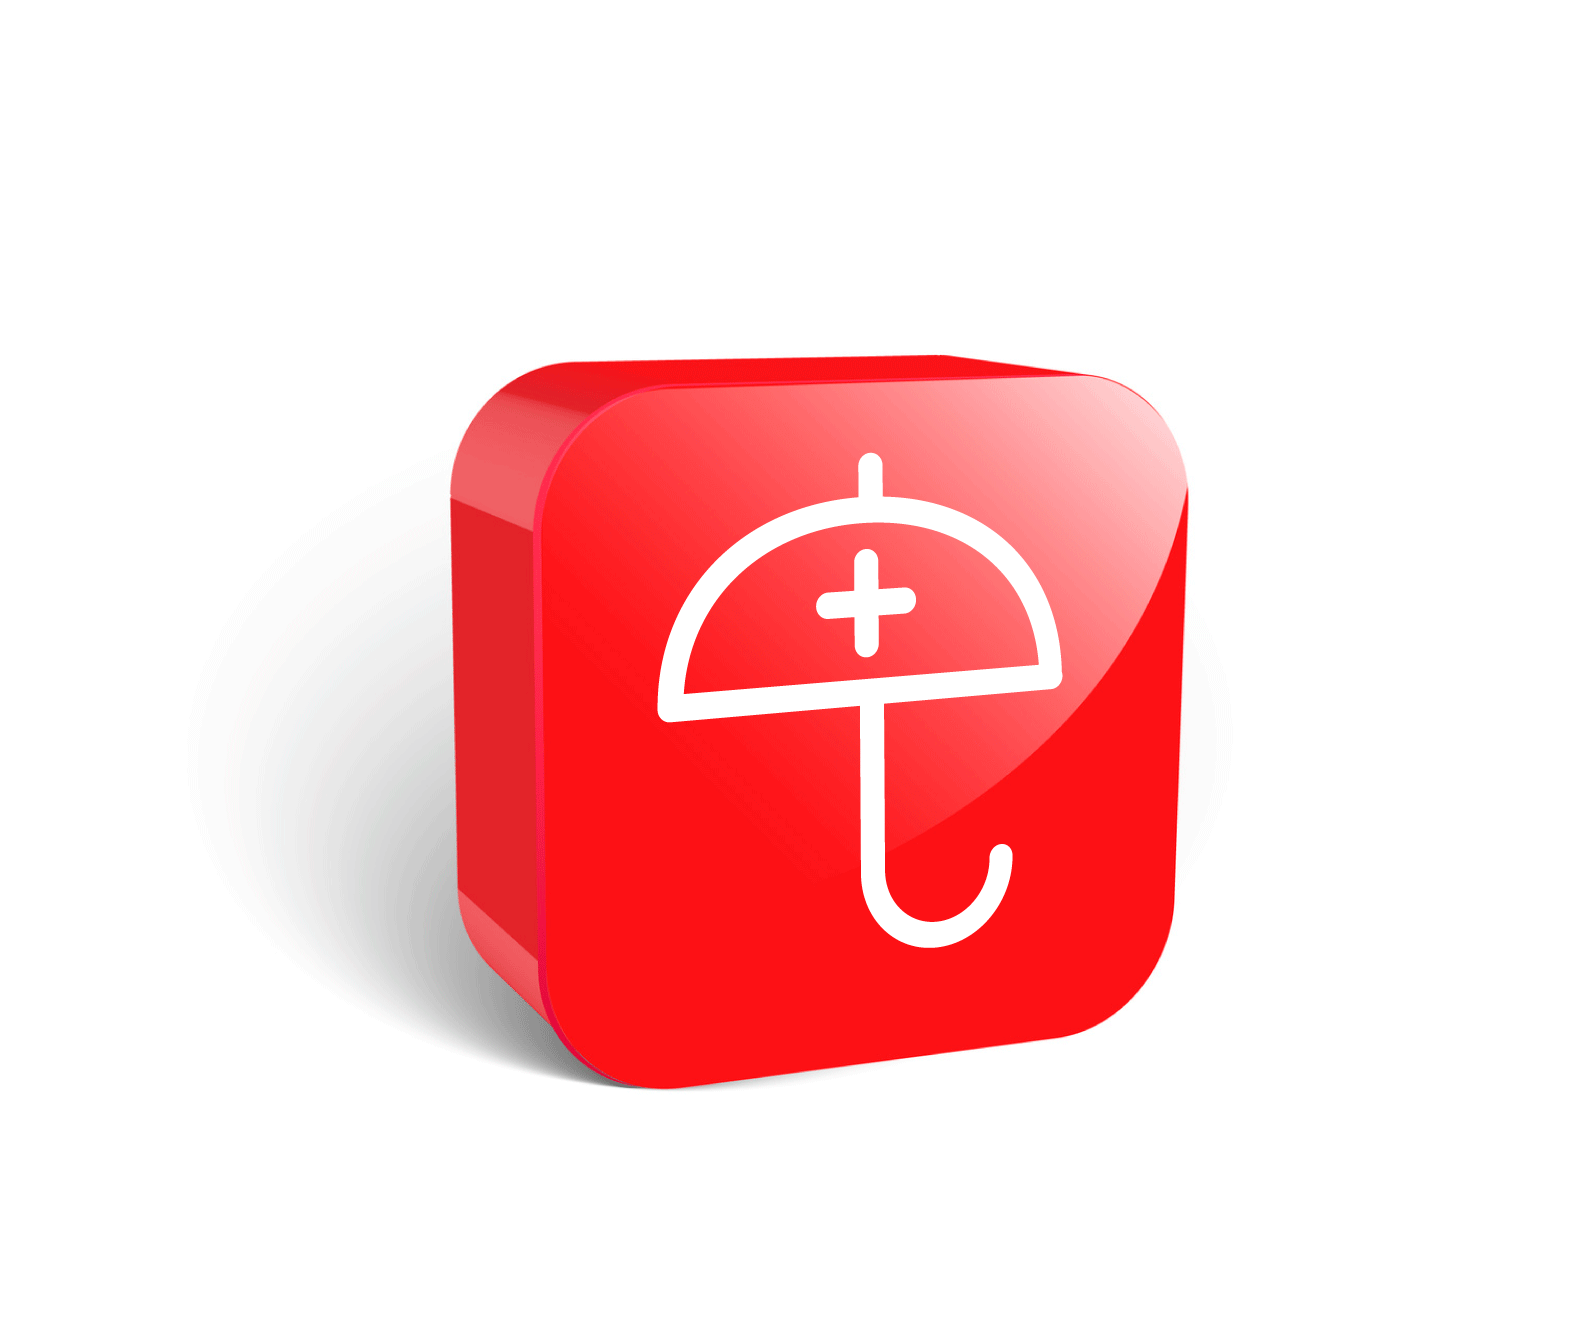 duża czerwona ikona 3D, ubezpieczenia grupowe